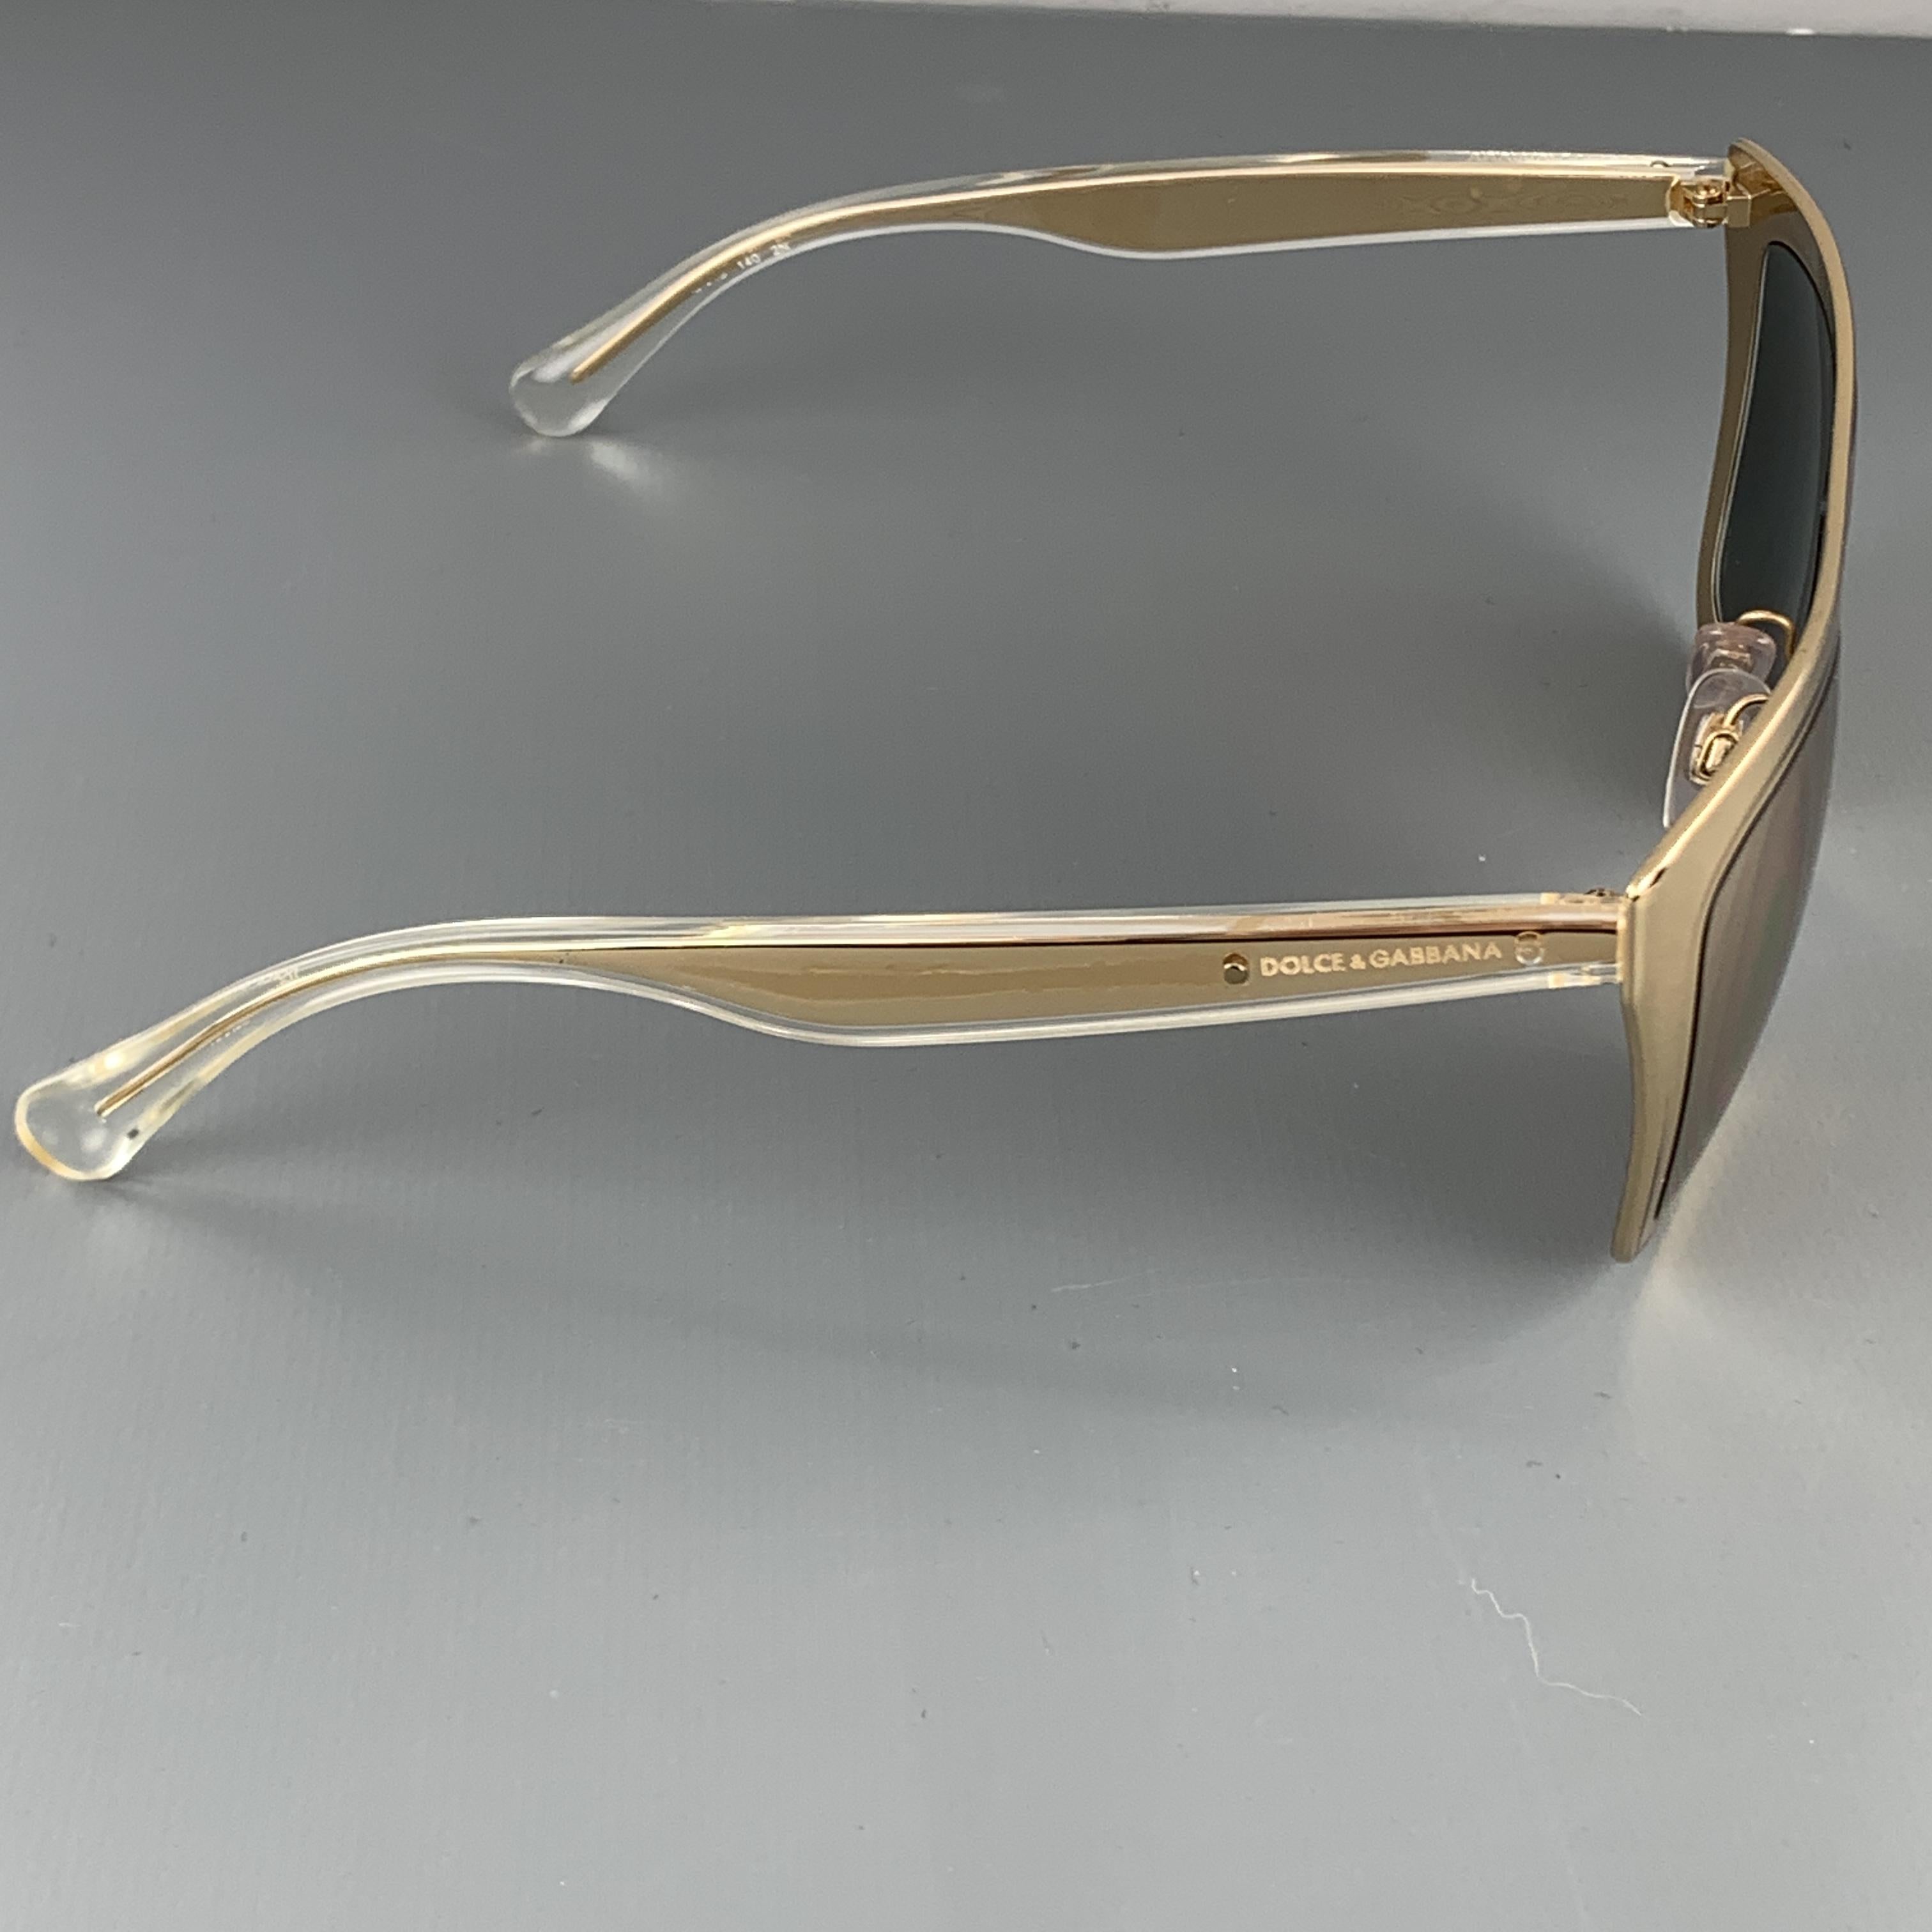 dolce & gabbana gold plated 18k sunglasses